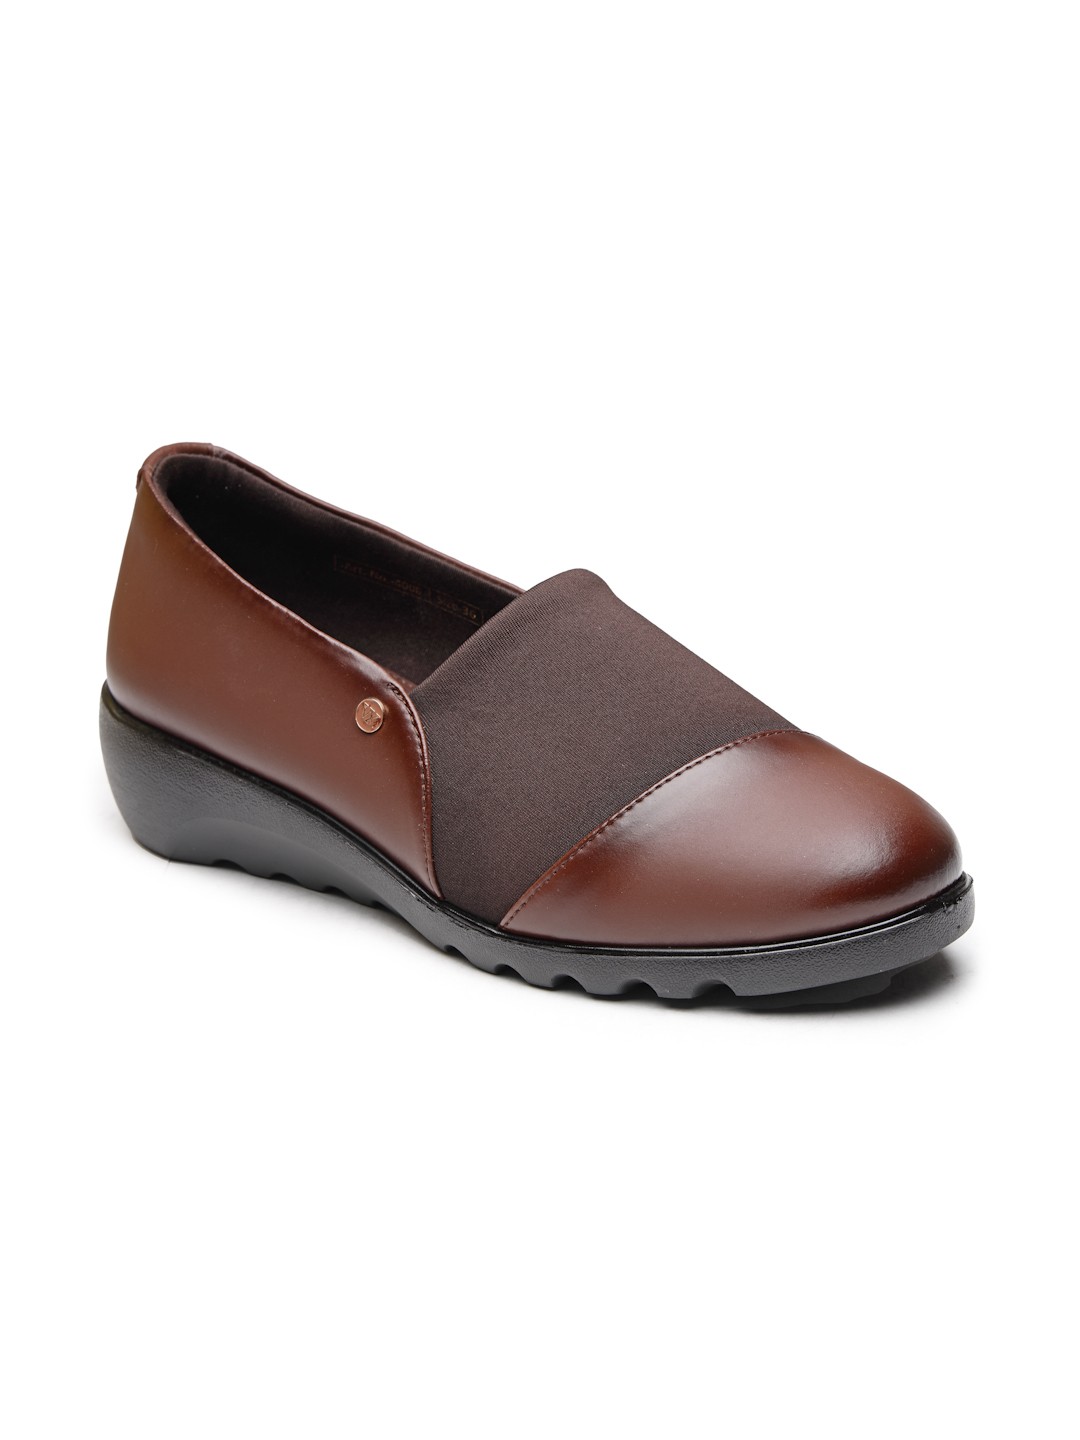 Buy Von Wellx Germany Comfort Women's Brown Casual Shoes Ayla Online in Uttar Pradesh